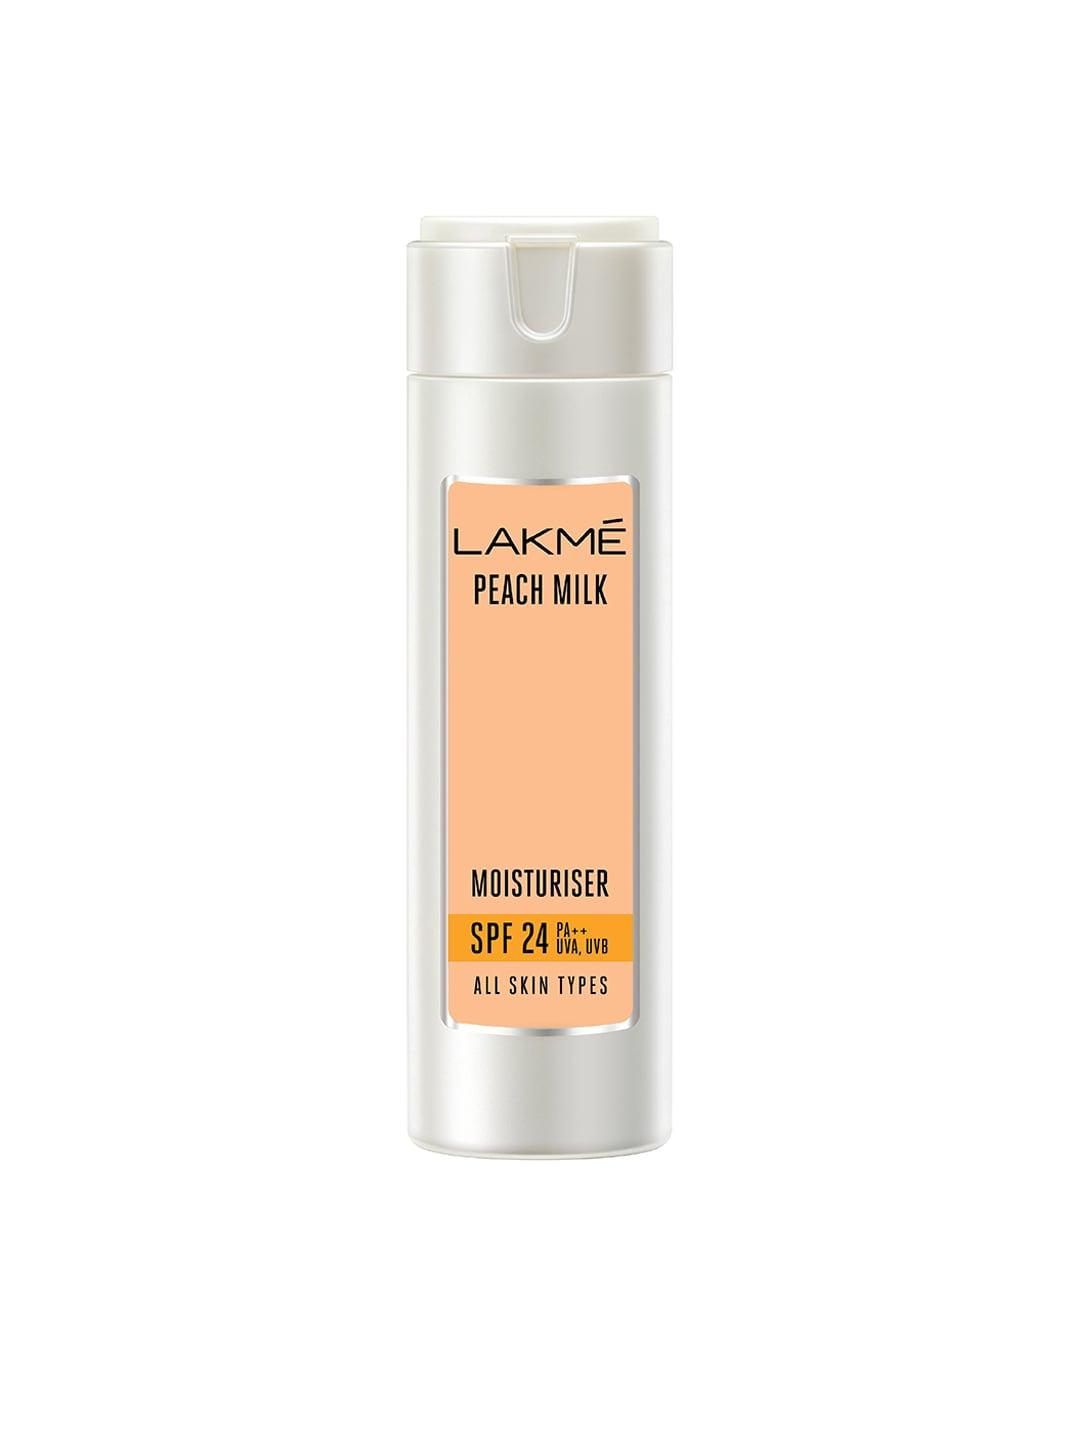 lakme-peach-milk-spf-24-pa++-moisturiser-120ml